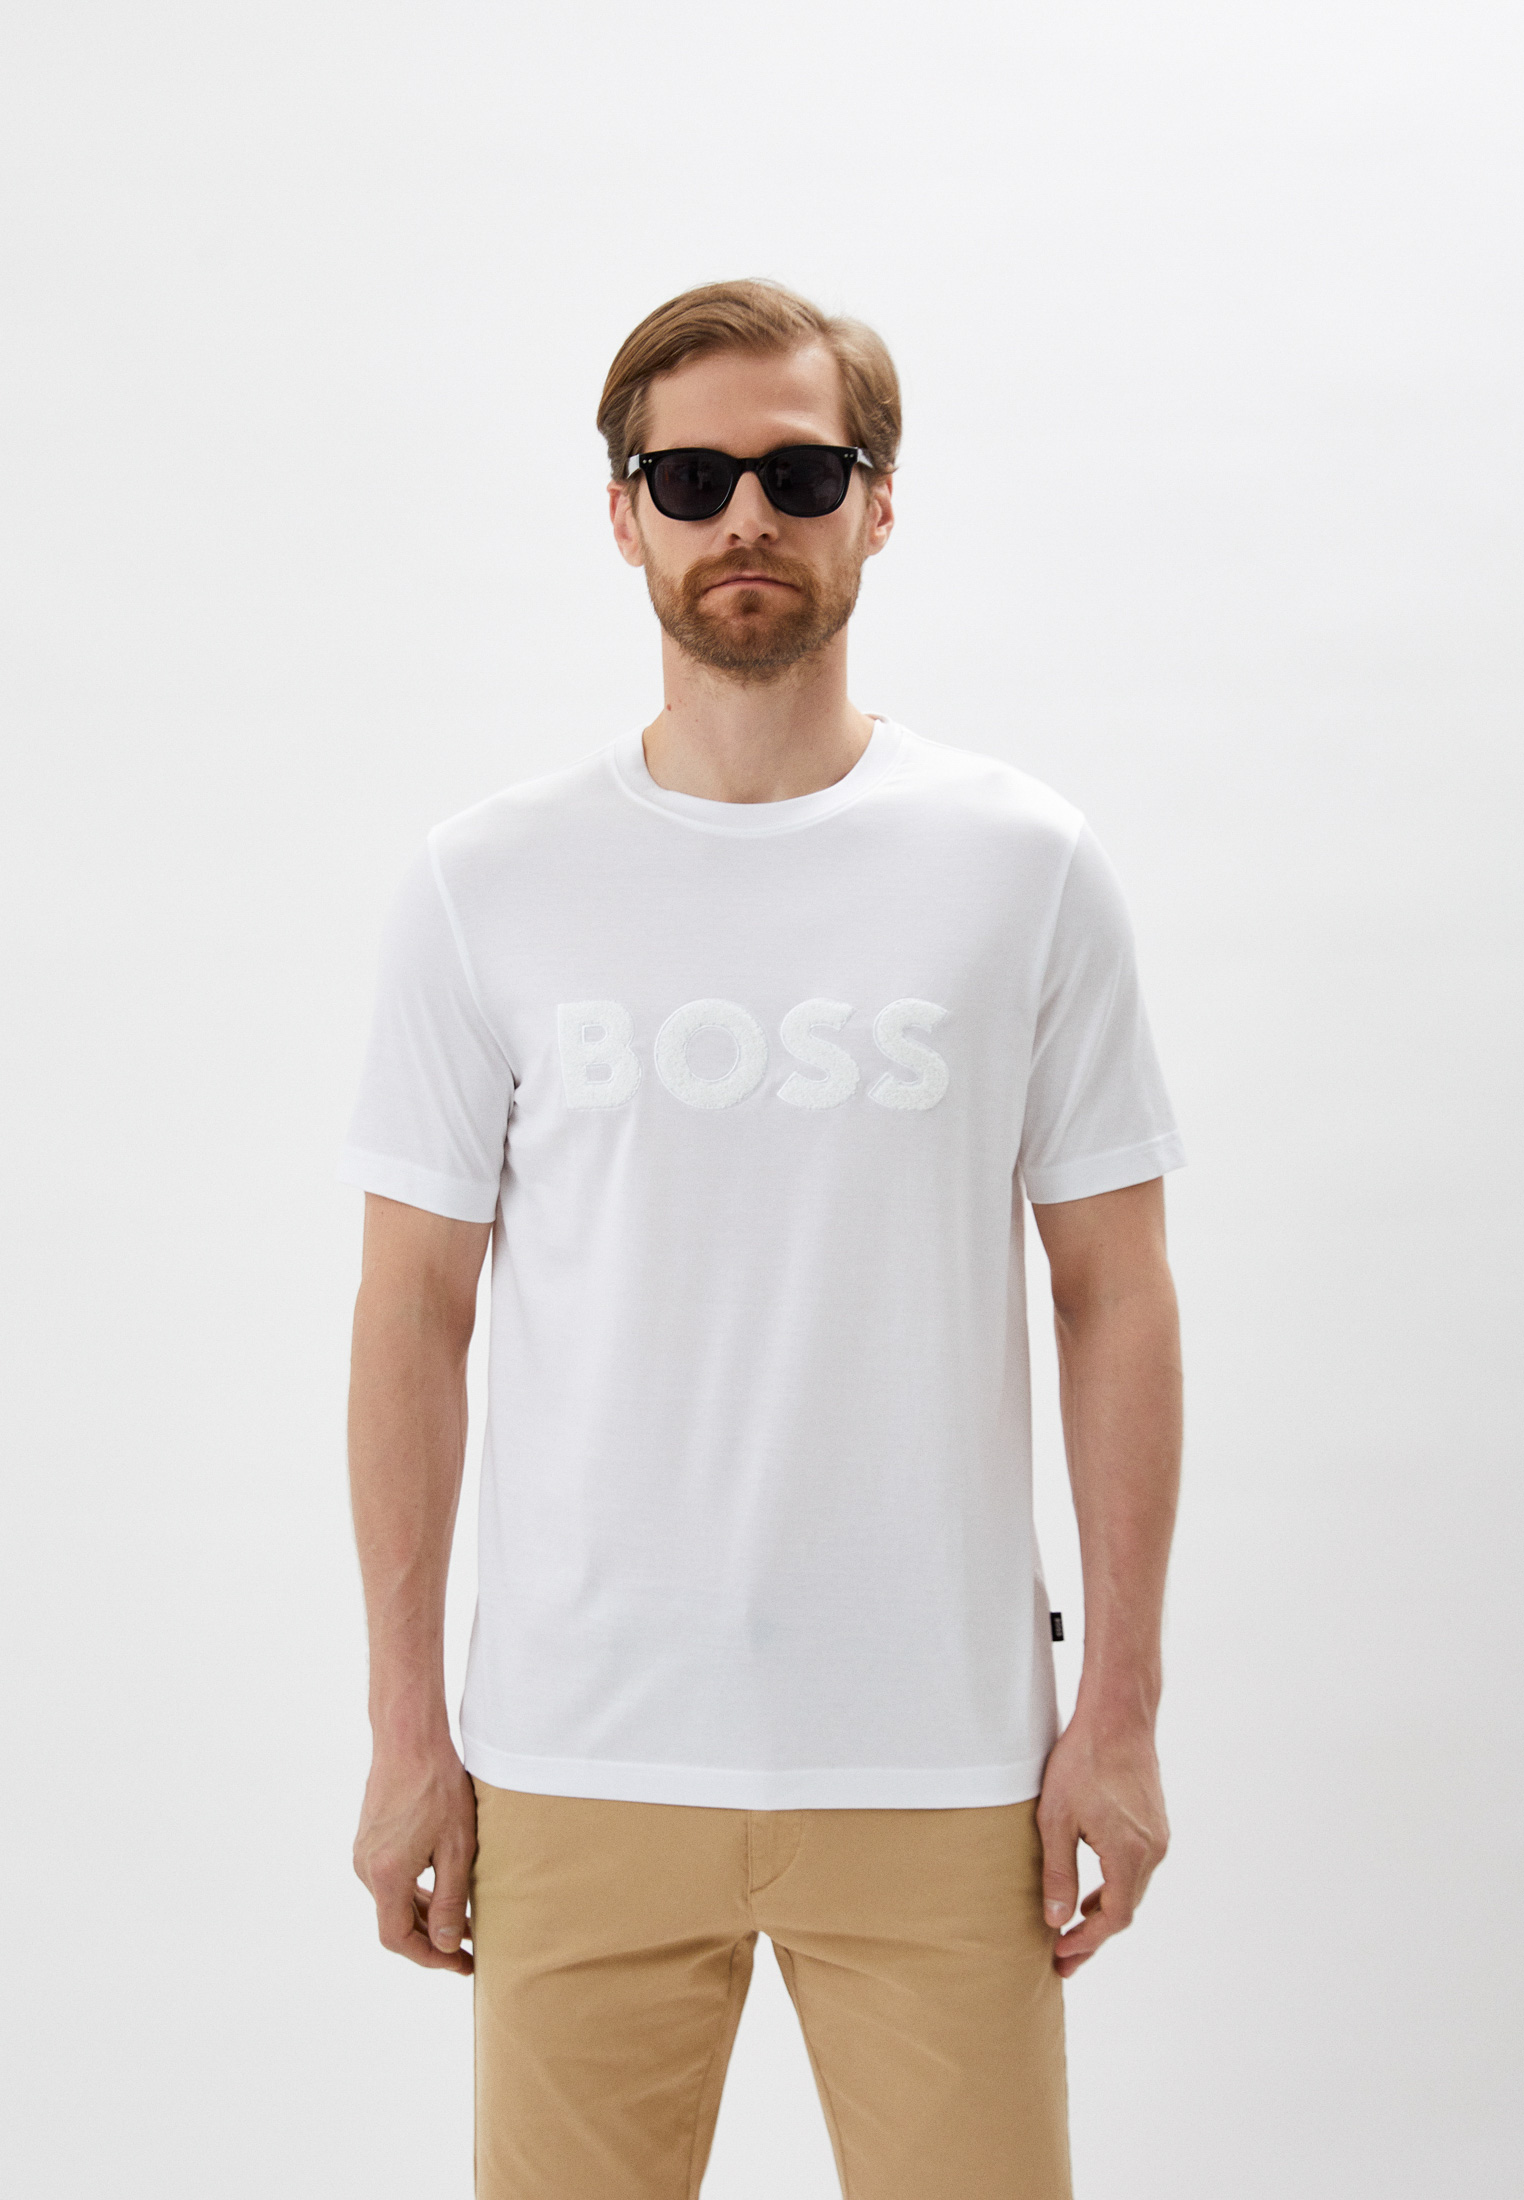 Мужская футболка Boss (Босс) 50477243: изображение 1